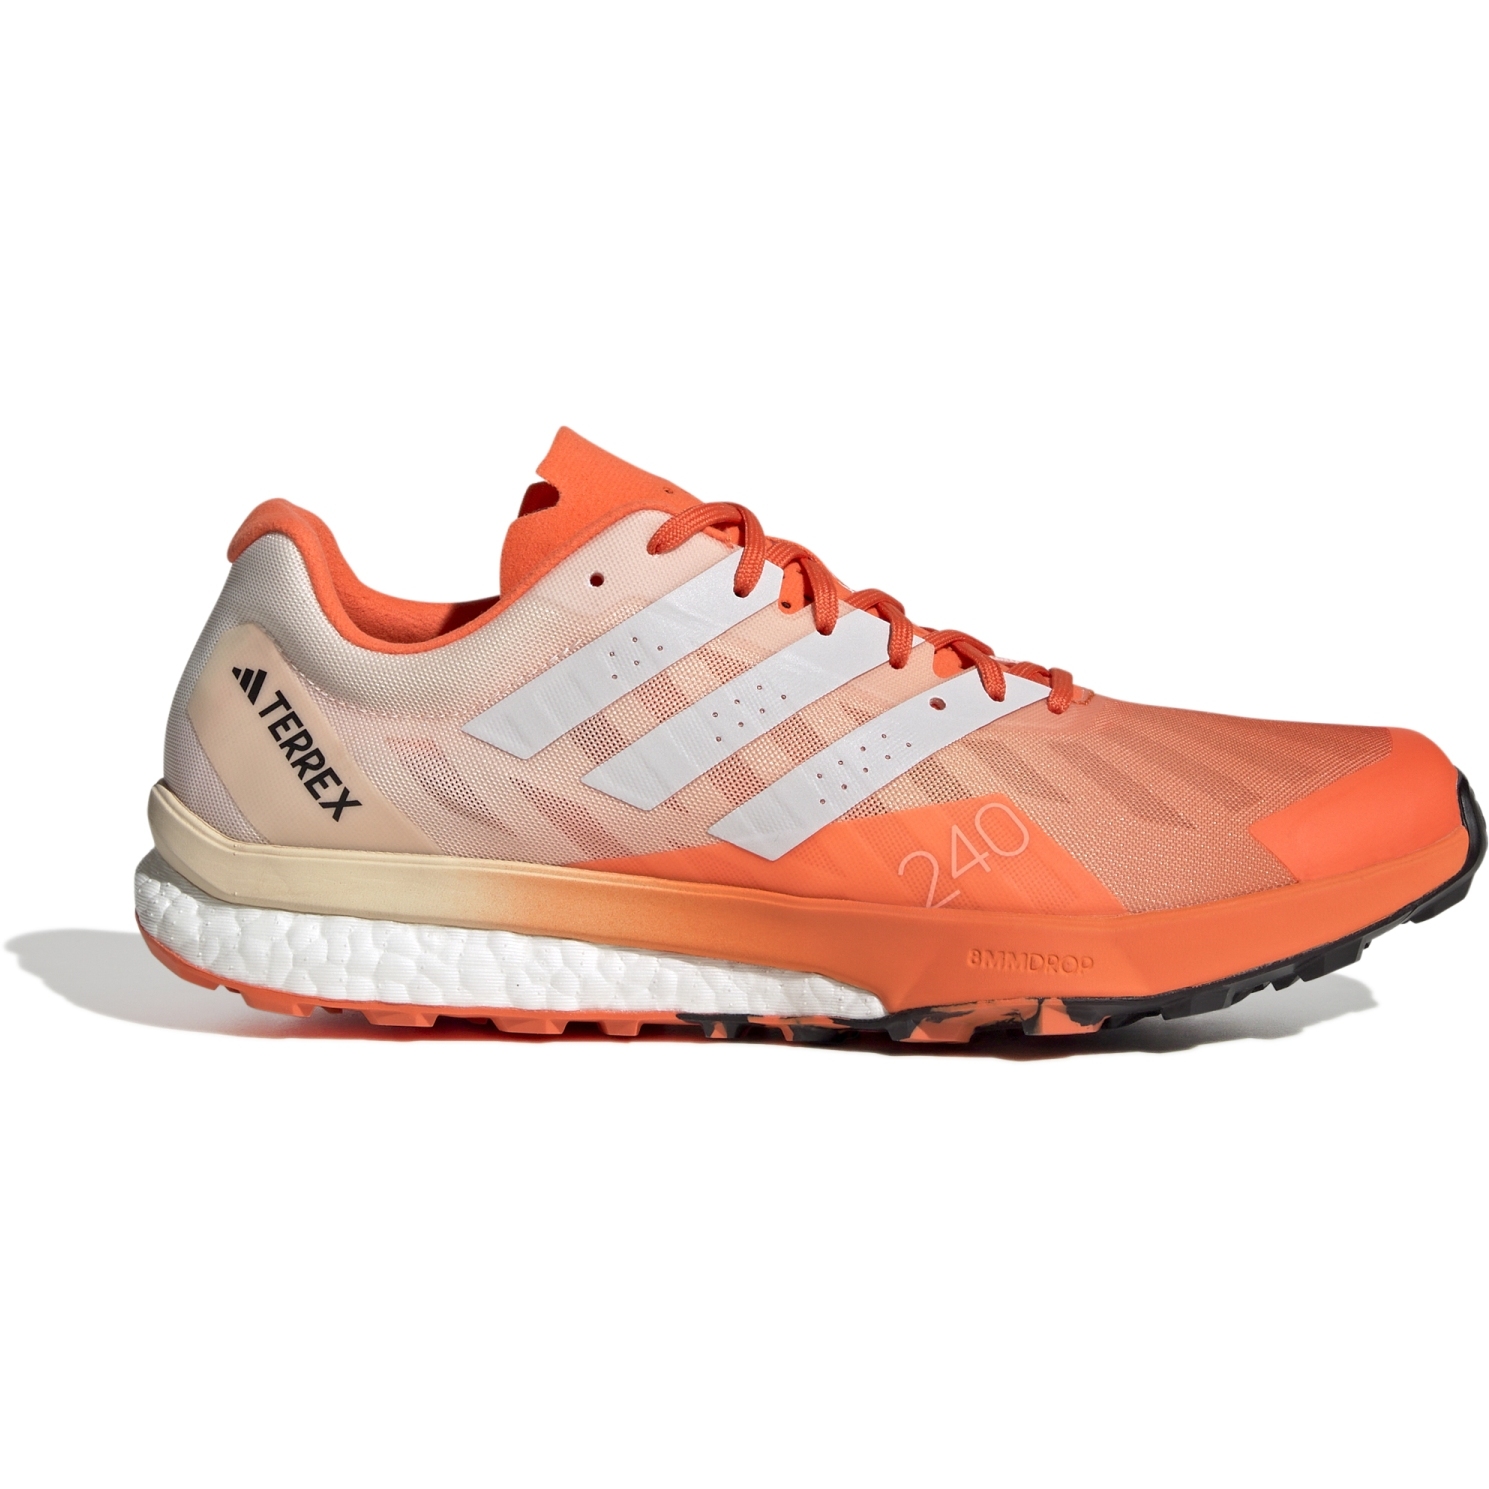 Produktbild von adidas TERREX Speed Ultra Trailrunning-Schuhe Herren - impact orange/caryon white/core black HR1120